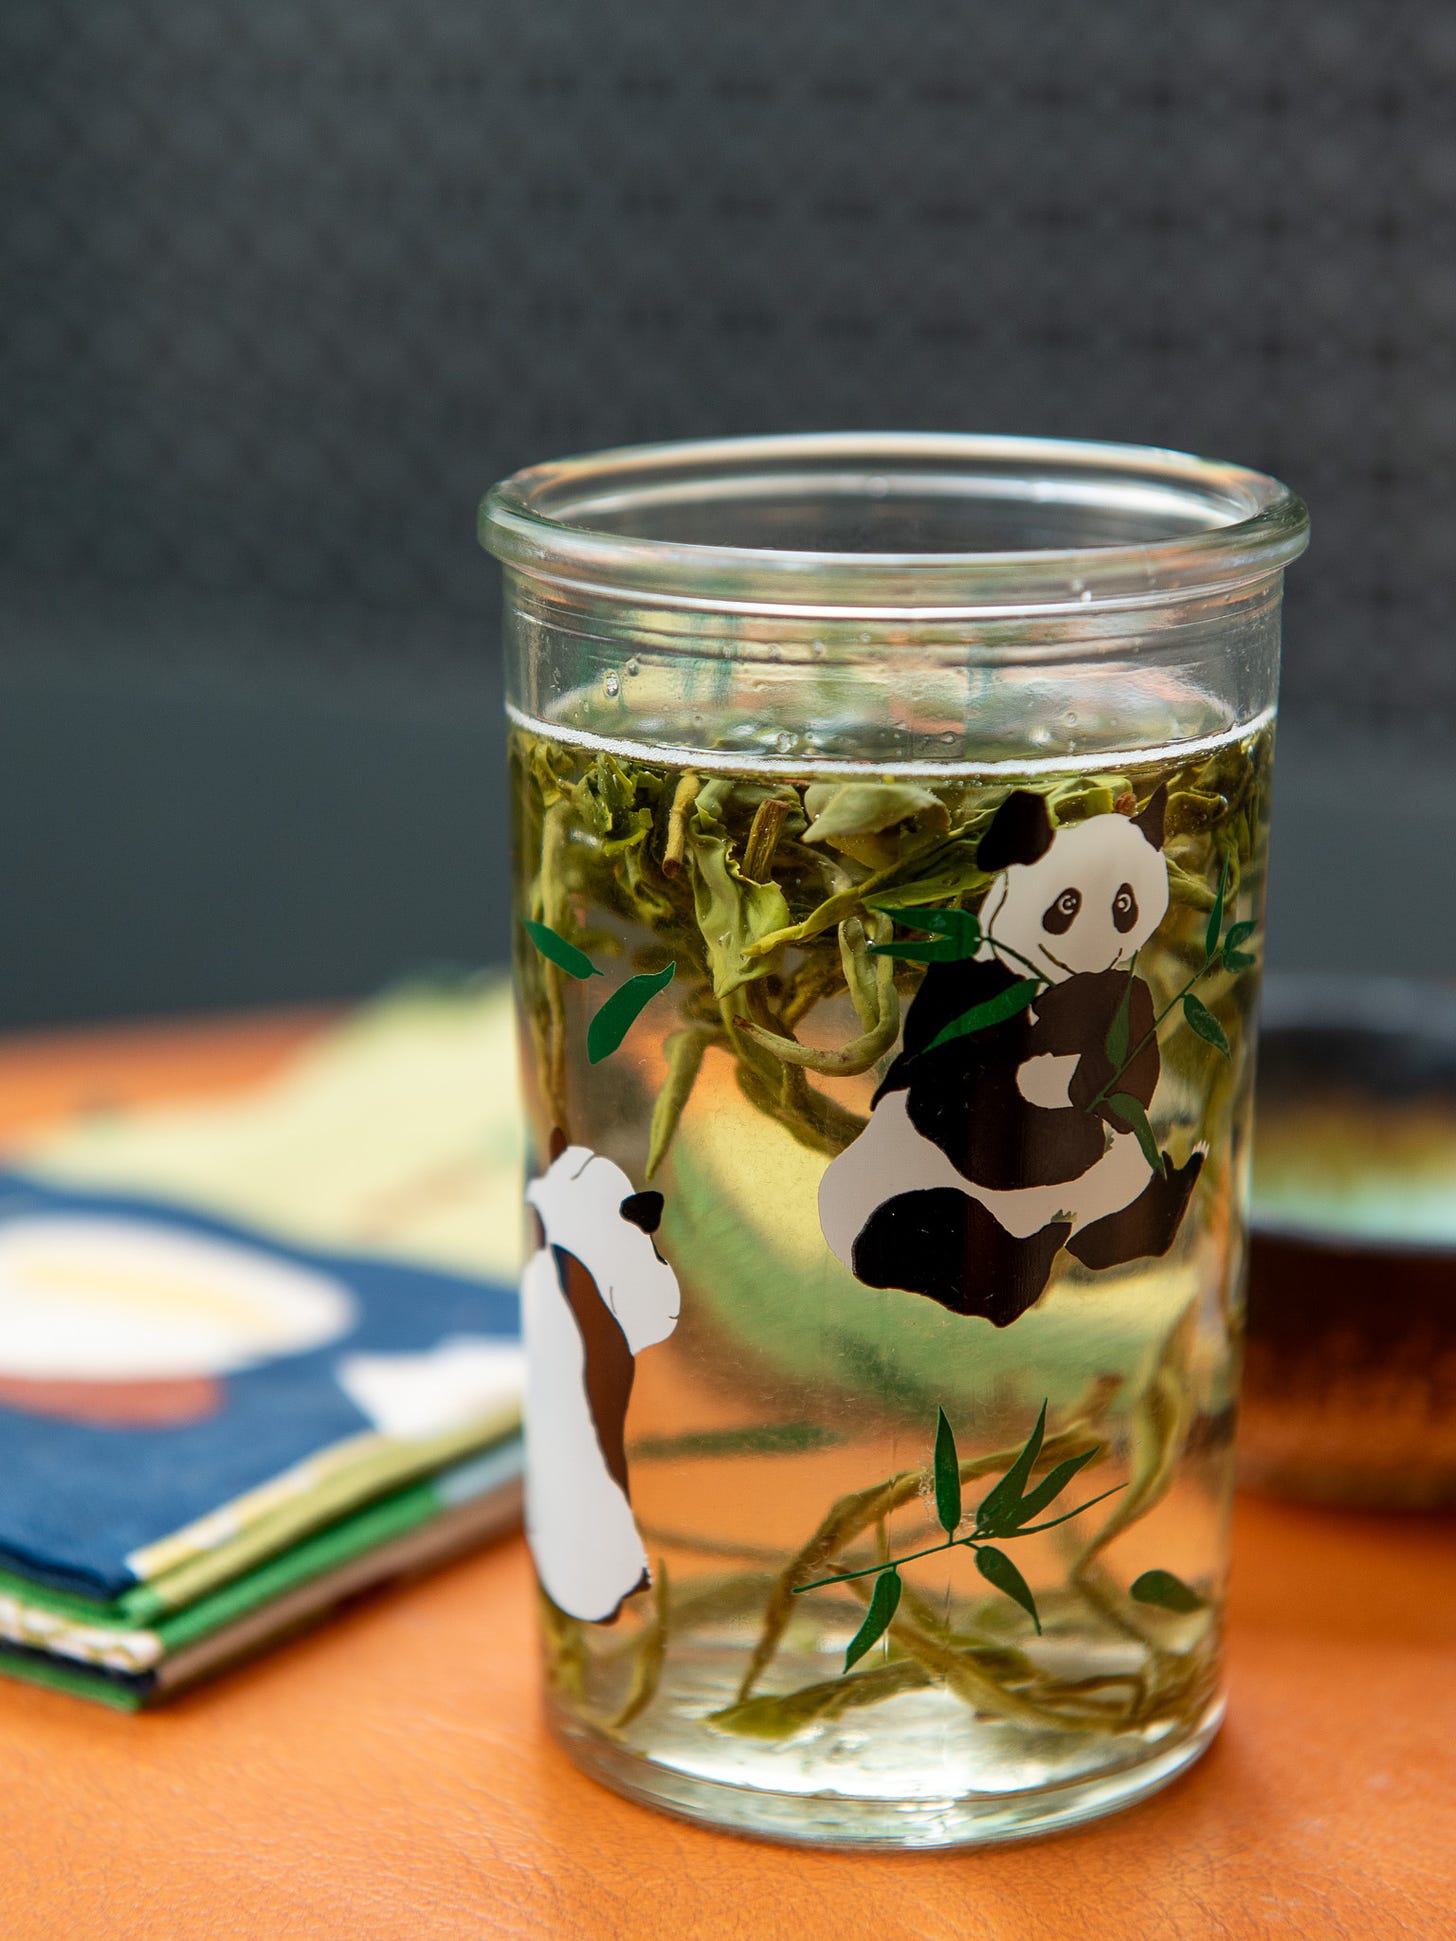 ID: Bi luo chun green tea brewing in a tall glass